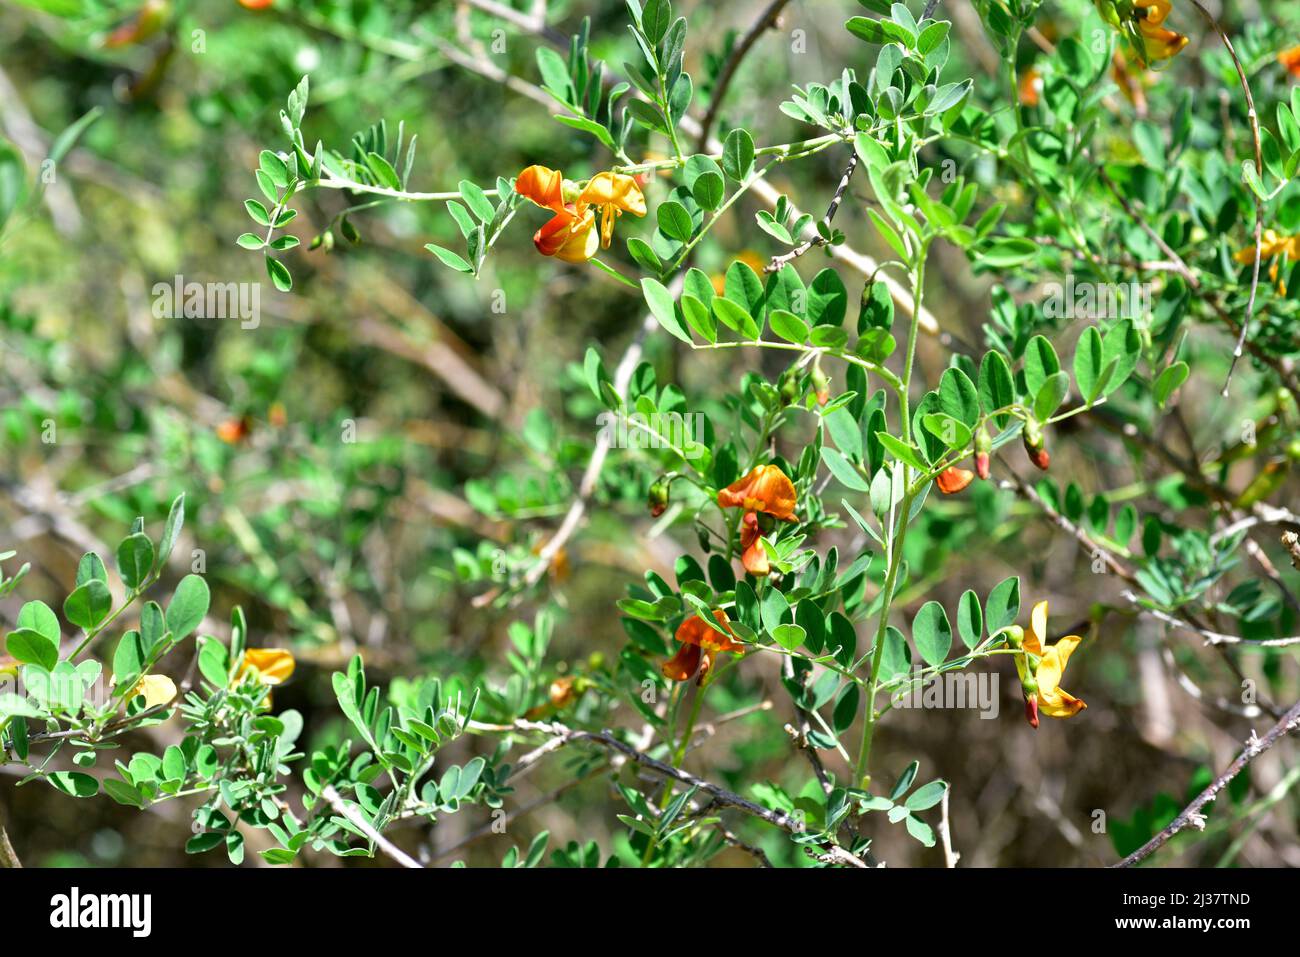 La vescica-senna (Colutea Orientalis) è un arbusto deciduo originario dell'Europa orientale. Arbusto in fiore. Foto Stock